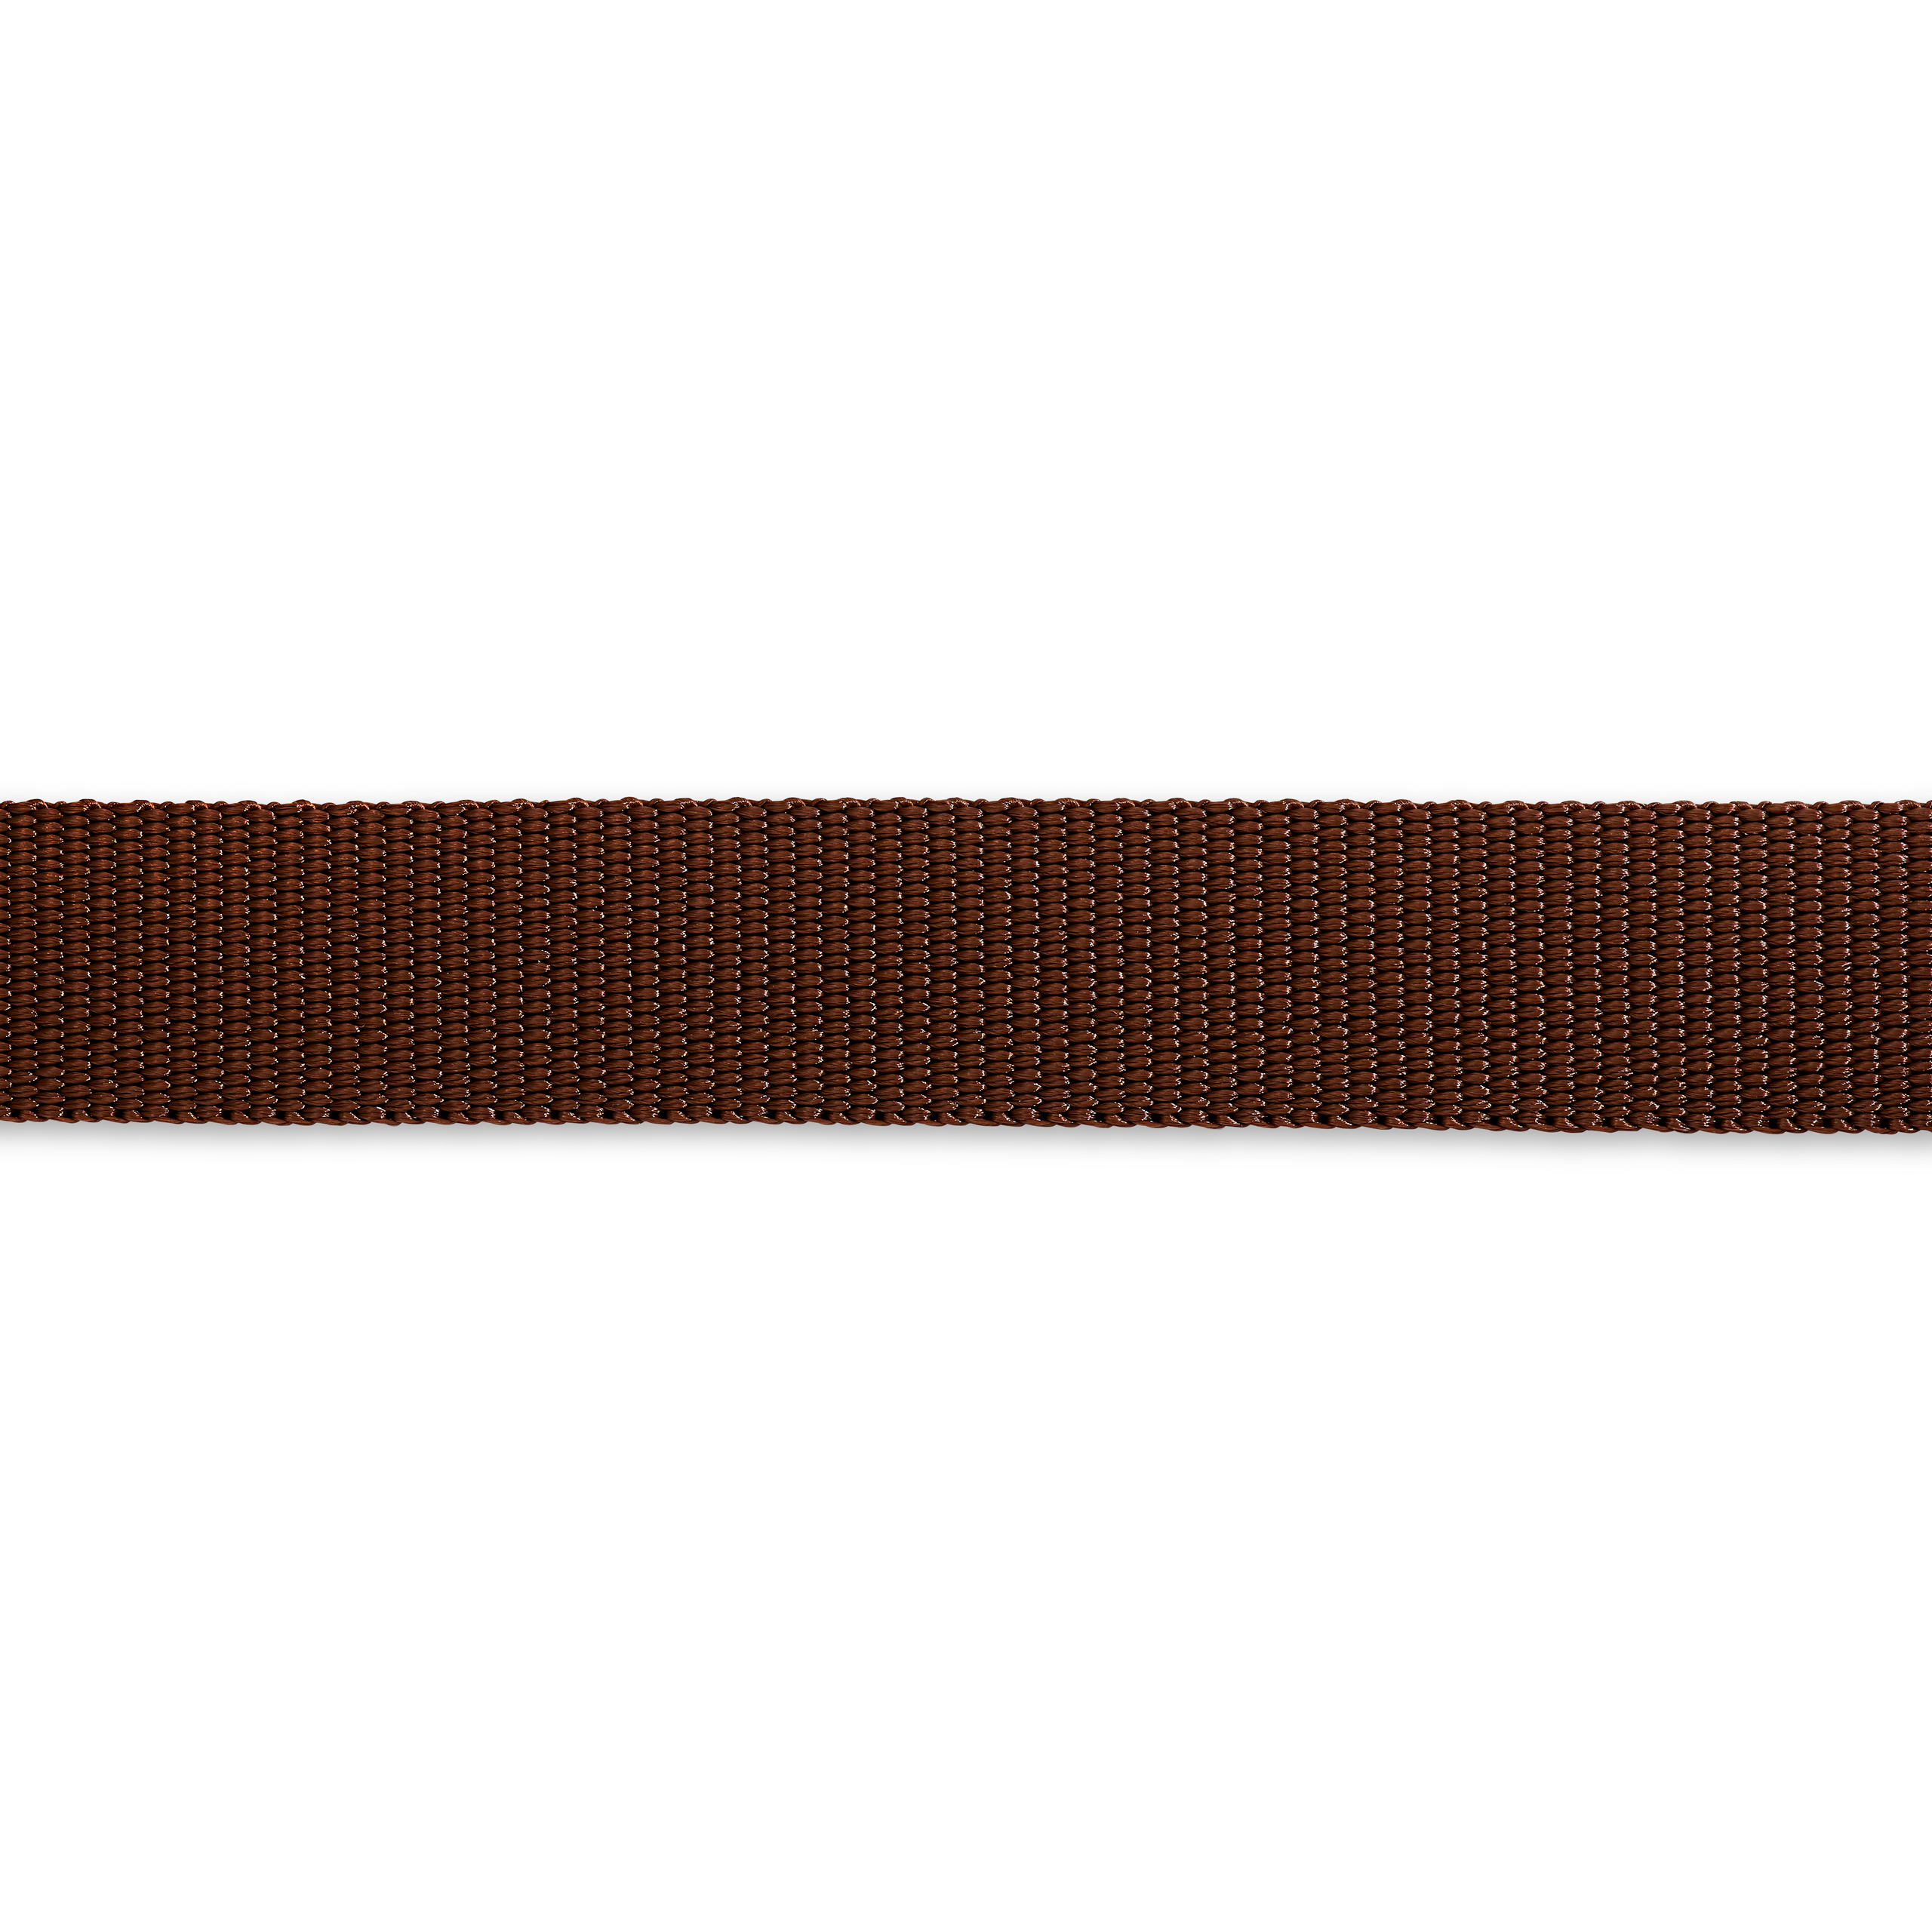 Gurtband für Rucksäcke 25 mm braun, Meterware